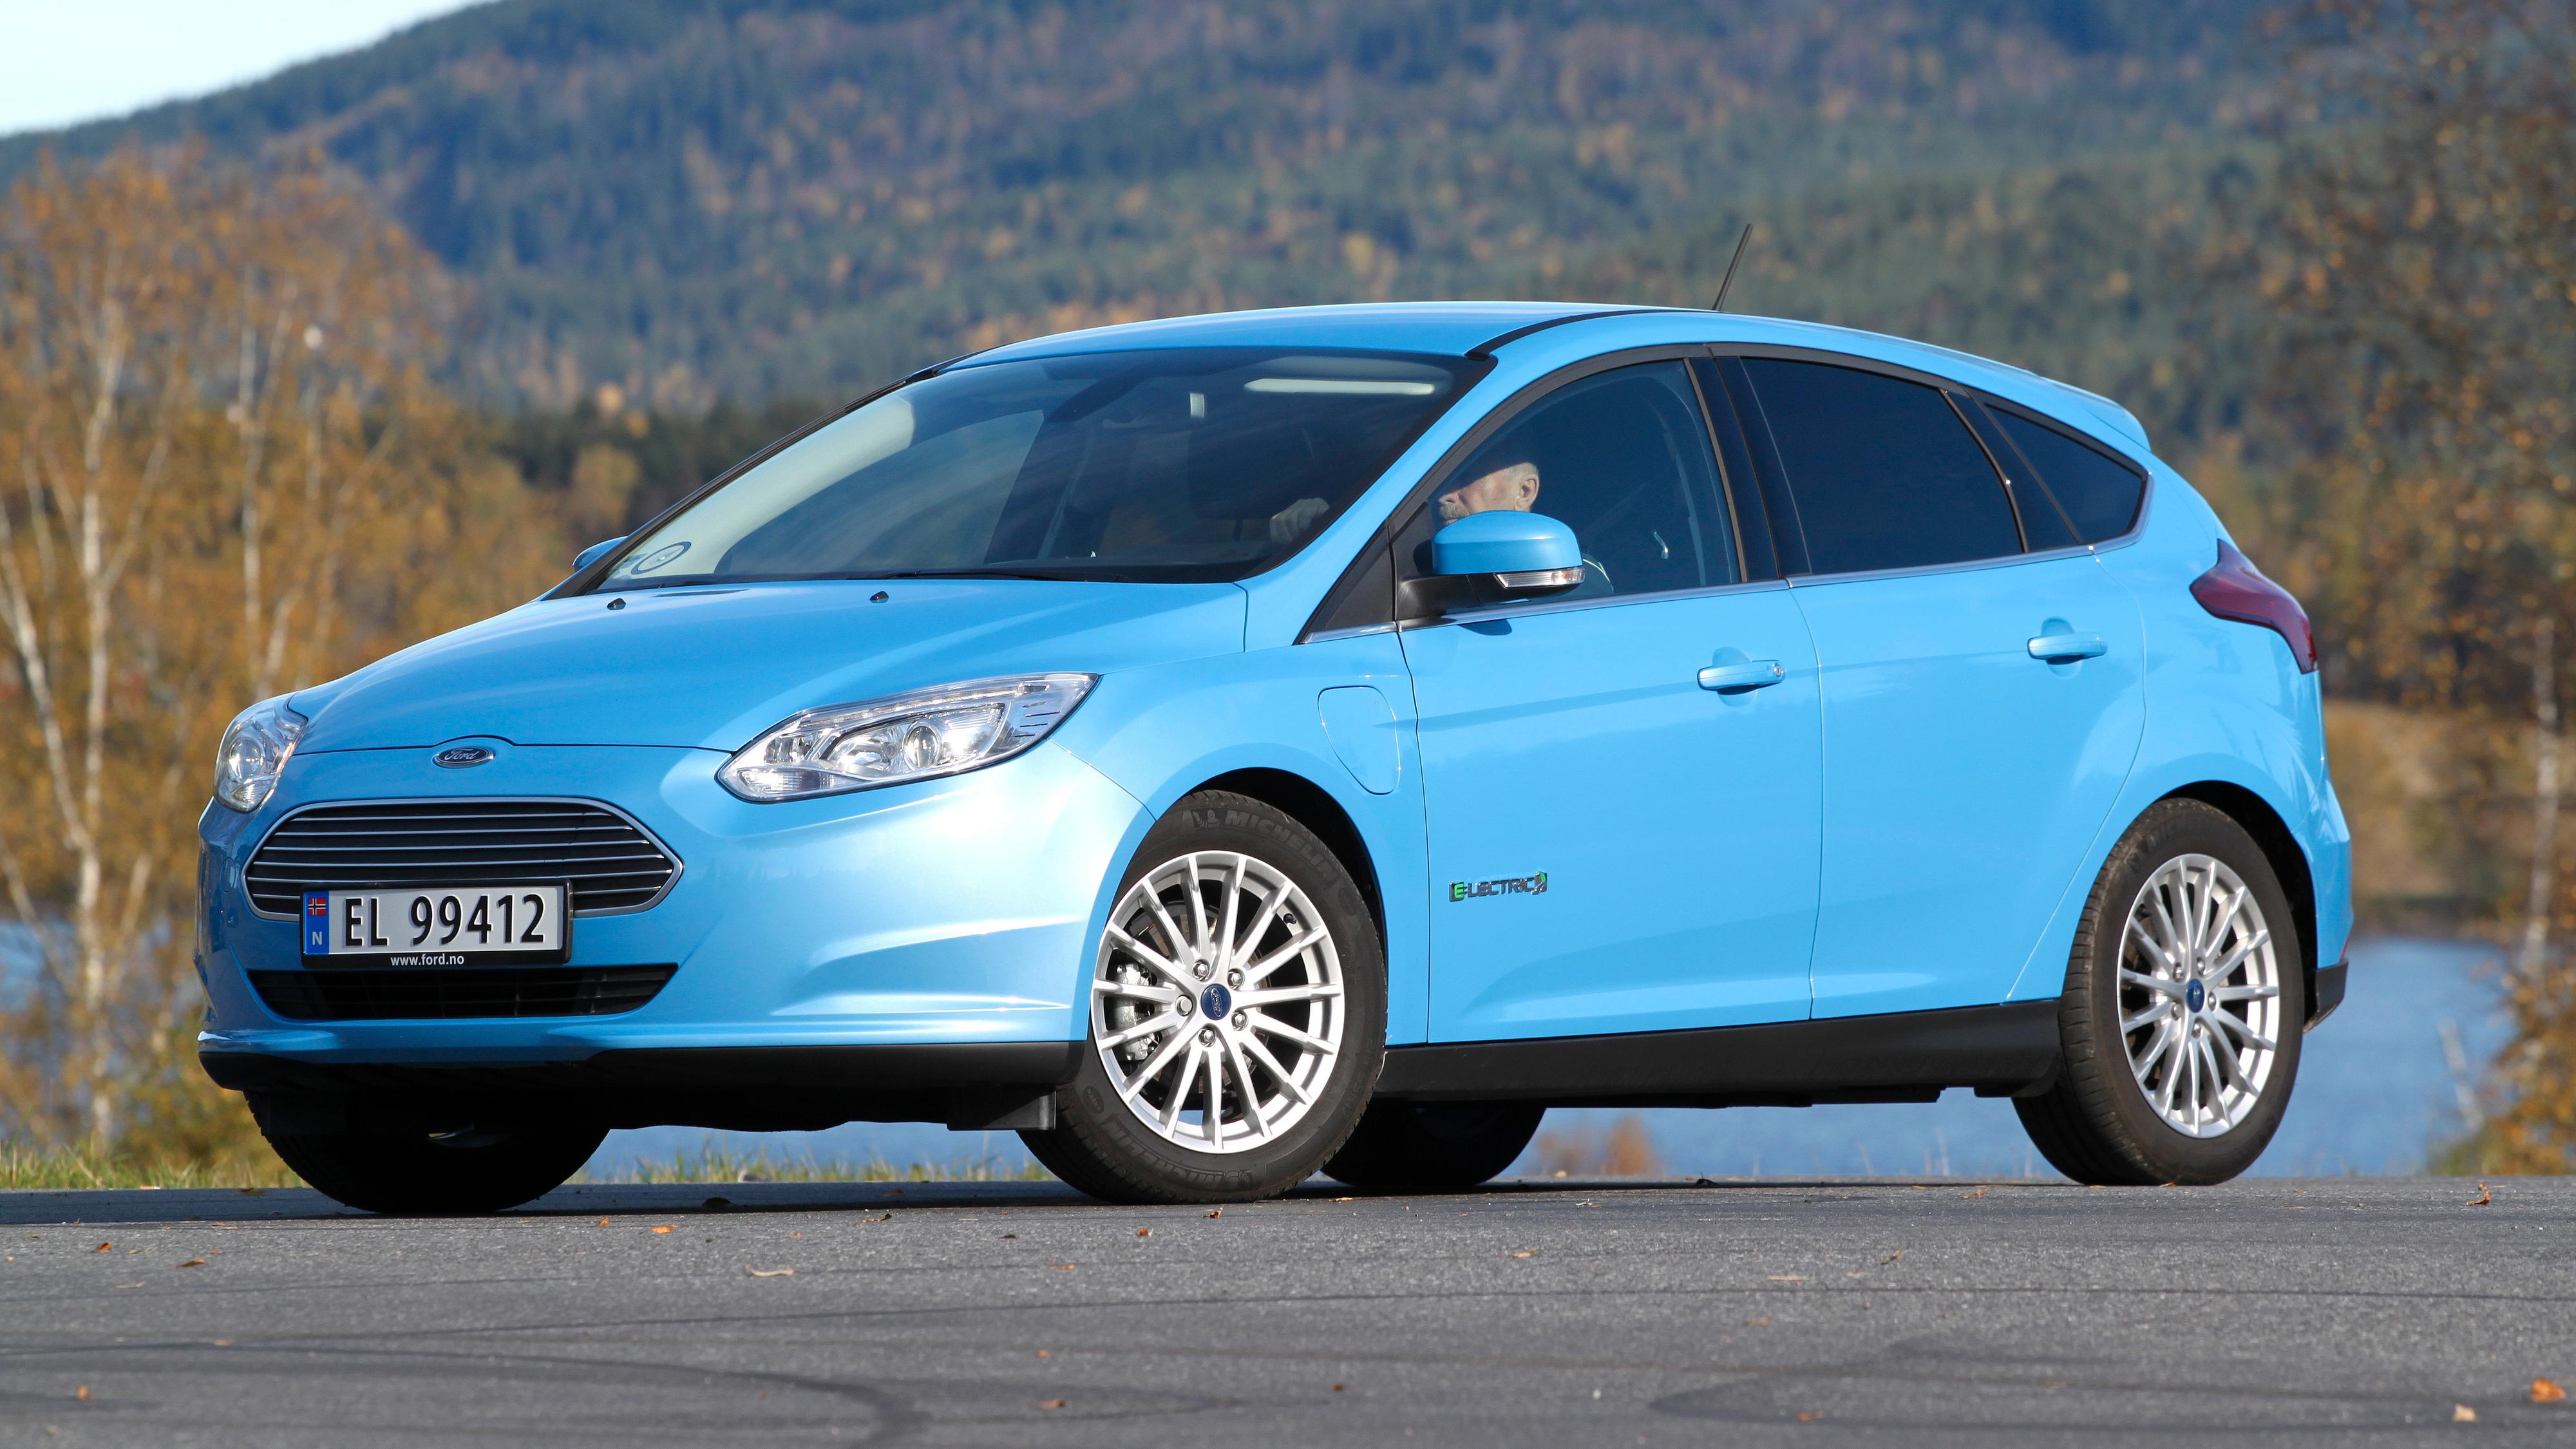 Ford Focus Electric er på vei ut av markedet, men er fortsatt mulig å kjøpe. Den finnes på lager hos Ford-forhandlere.